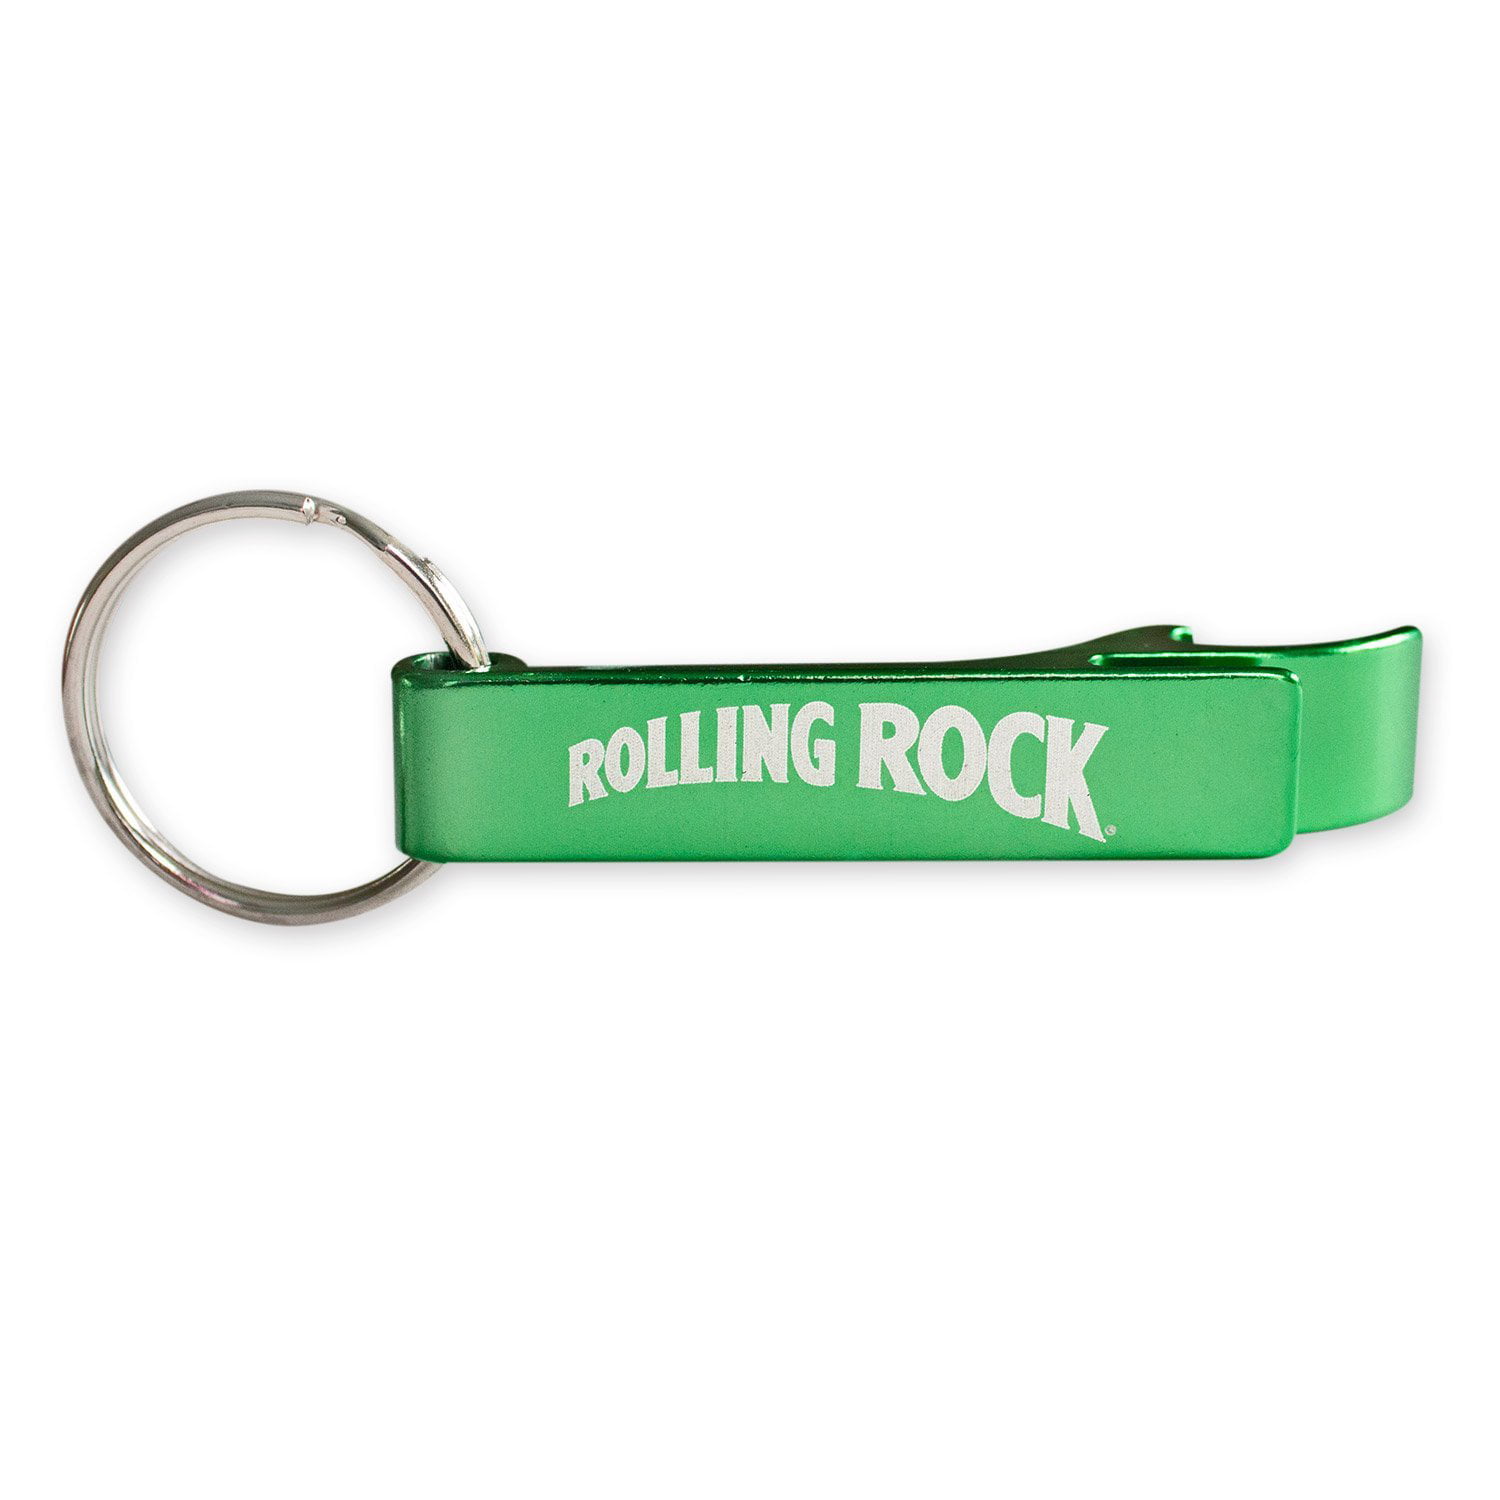 NEW Set of 3 Green Rolling Rock Beer Metal Aluminum Bottle Opener Keychains 